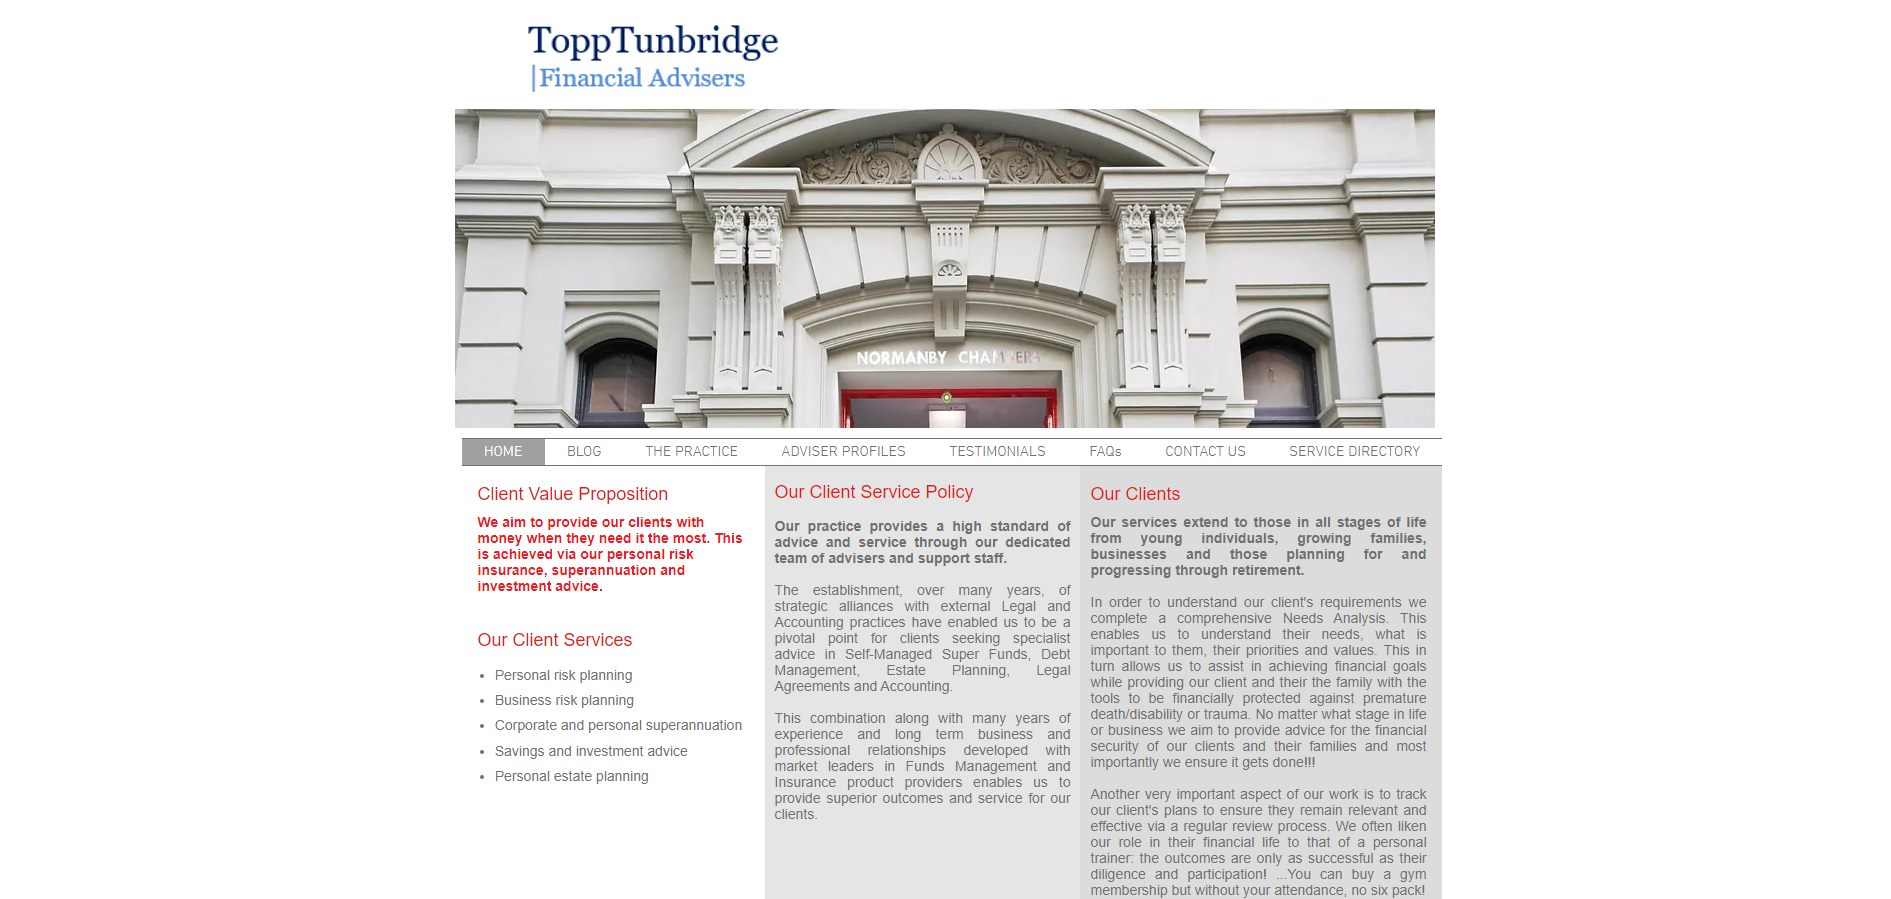 topptunbridge financial planners & advisors melbourne